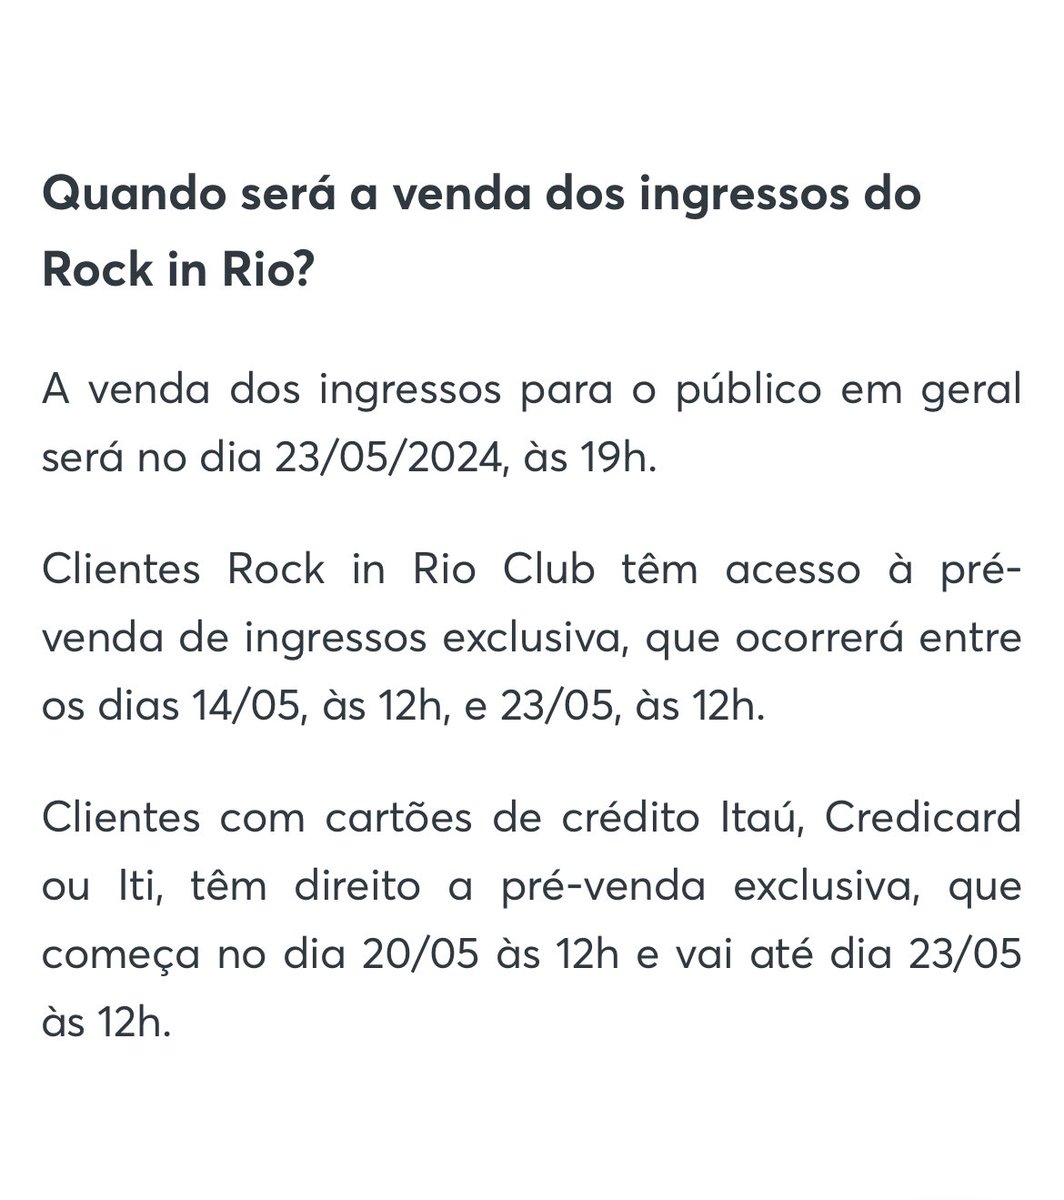 Novas datas e horários de pré-venda do Rock in Rio. Se liga 👇🎸 #RockinRio40anos  

Pré-venda Club: 14 à 23/05 às 12h
Pré-venda Itaú: 20 à 23/05 às 12h 
Venda Geral: 23/05 às 19h

Lembrando valores: inteira R$ 795; meia-entrada R$ 397,50 ; e benefício Itaú 15% R$675,75.